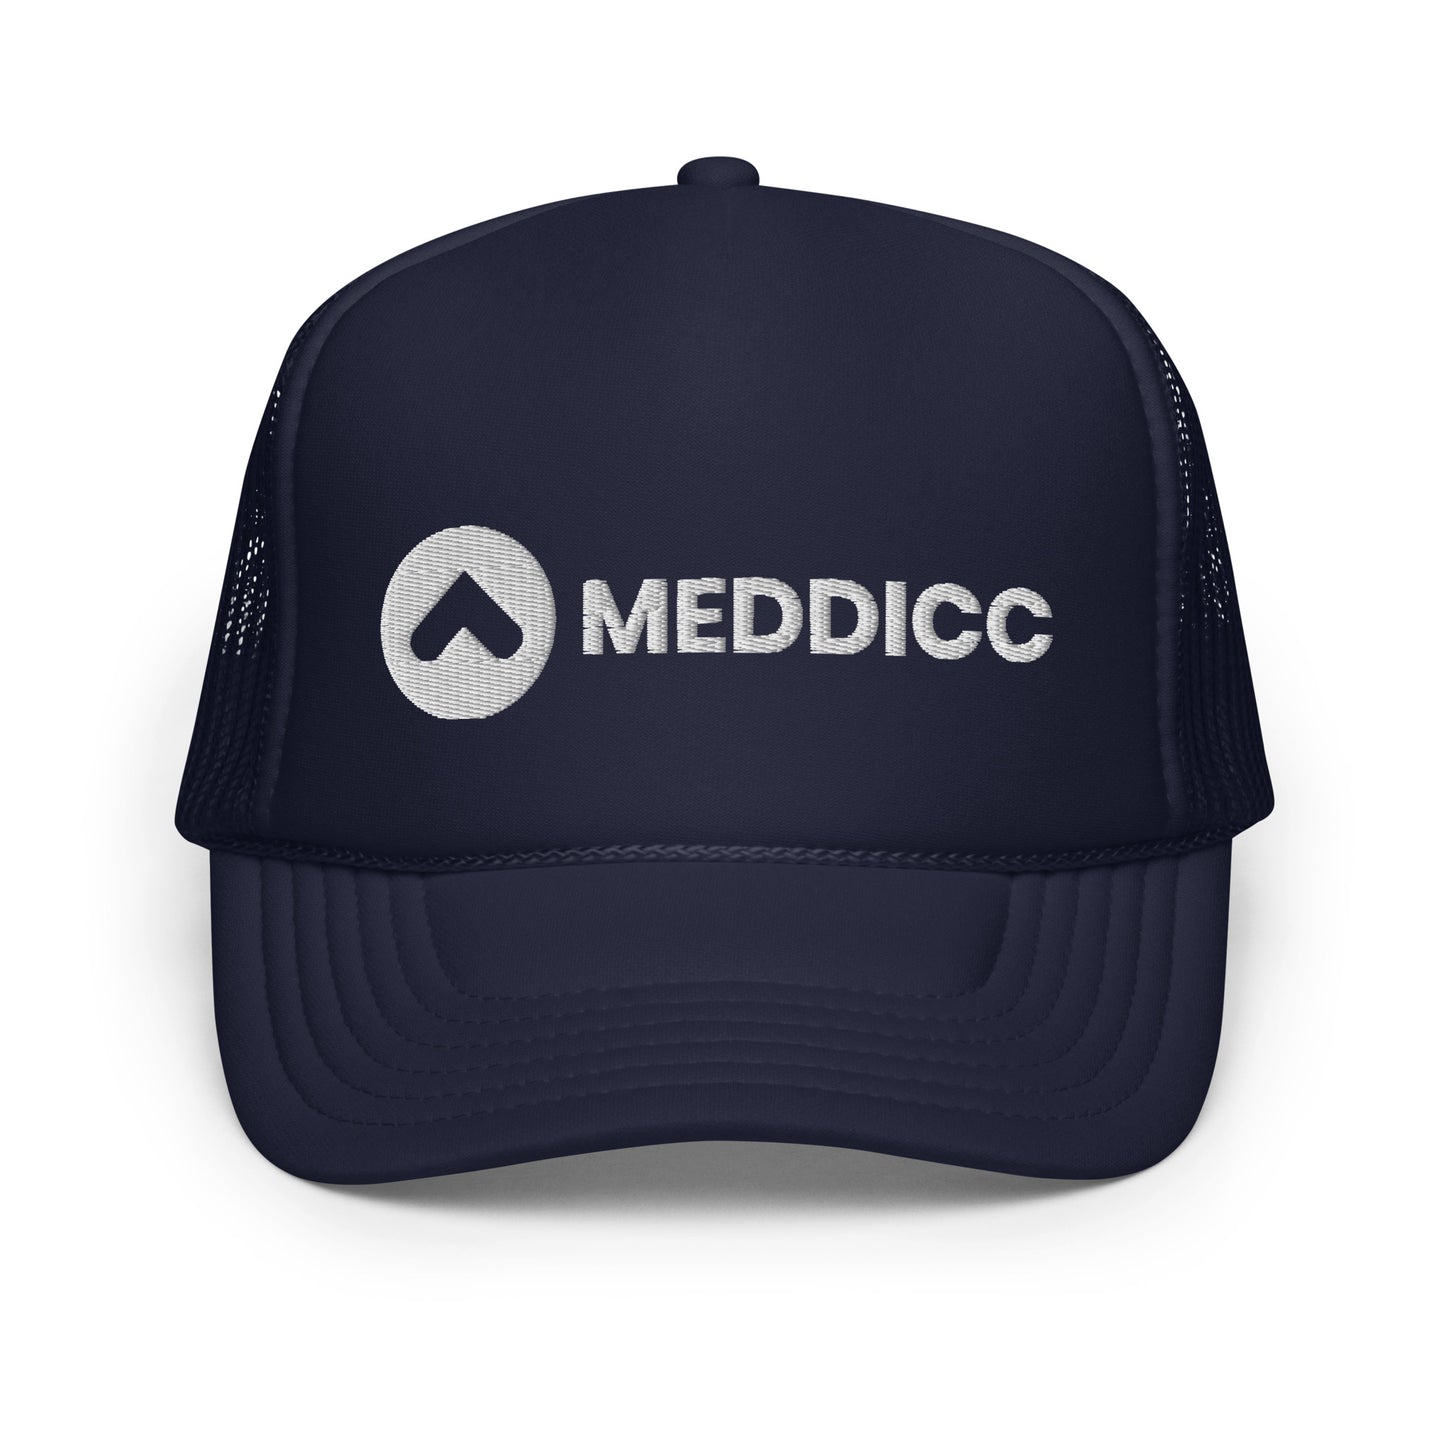 MEDDICC Trucker Hat